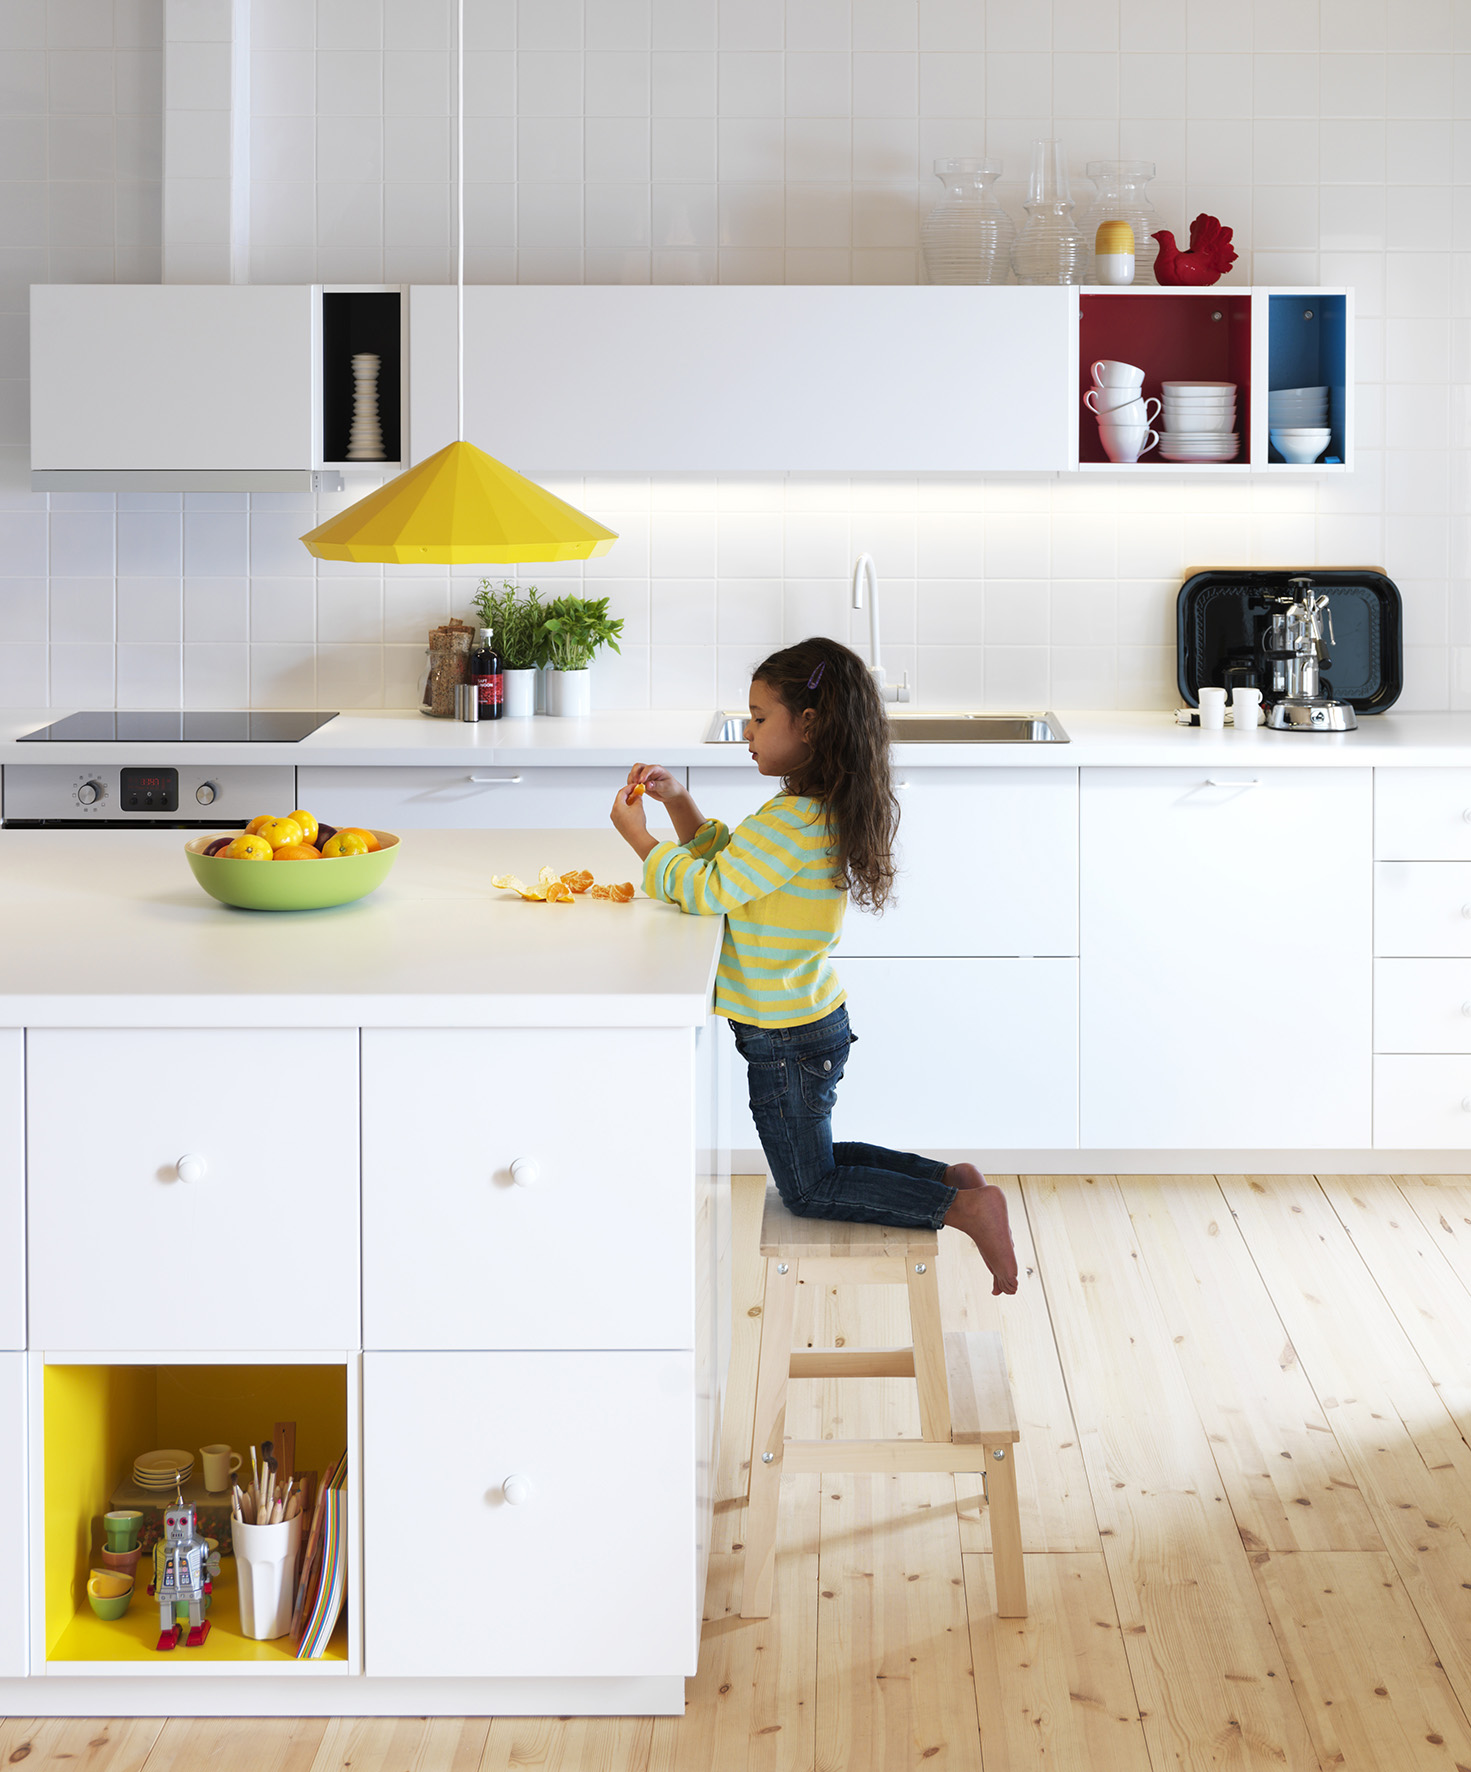 Stevenson Gespecificeerd Pech De nieuwe Metod keukens van IKEA - UW-keuken.nl